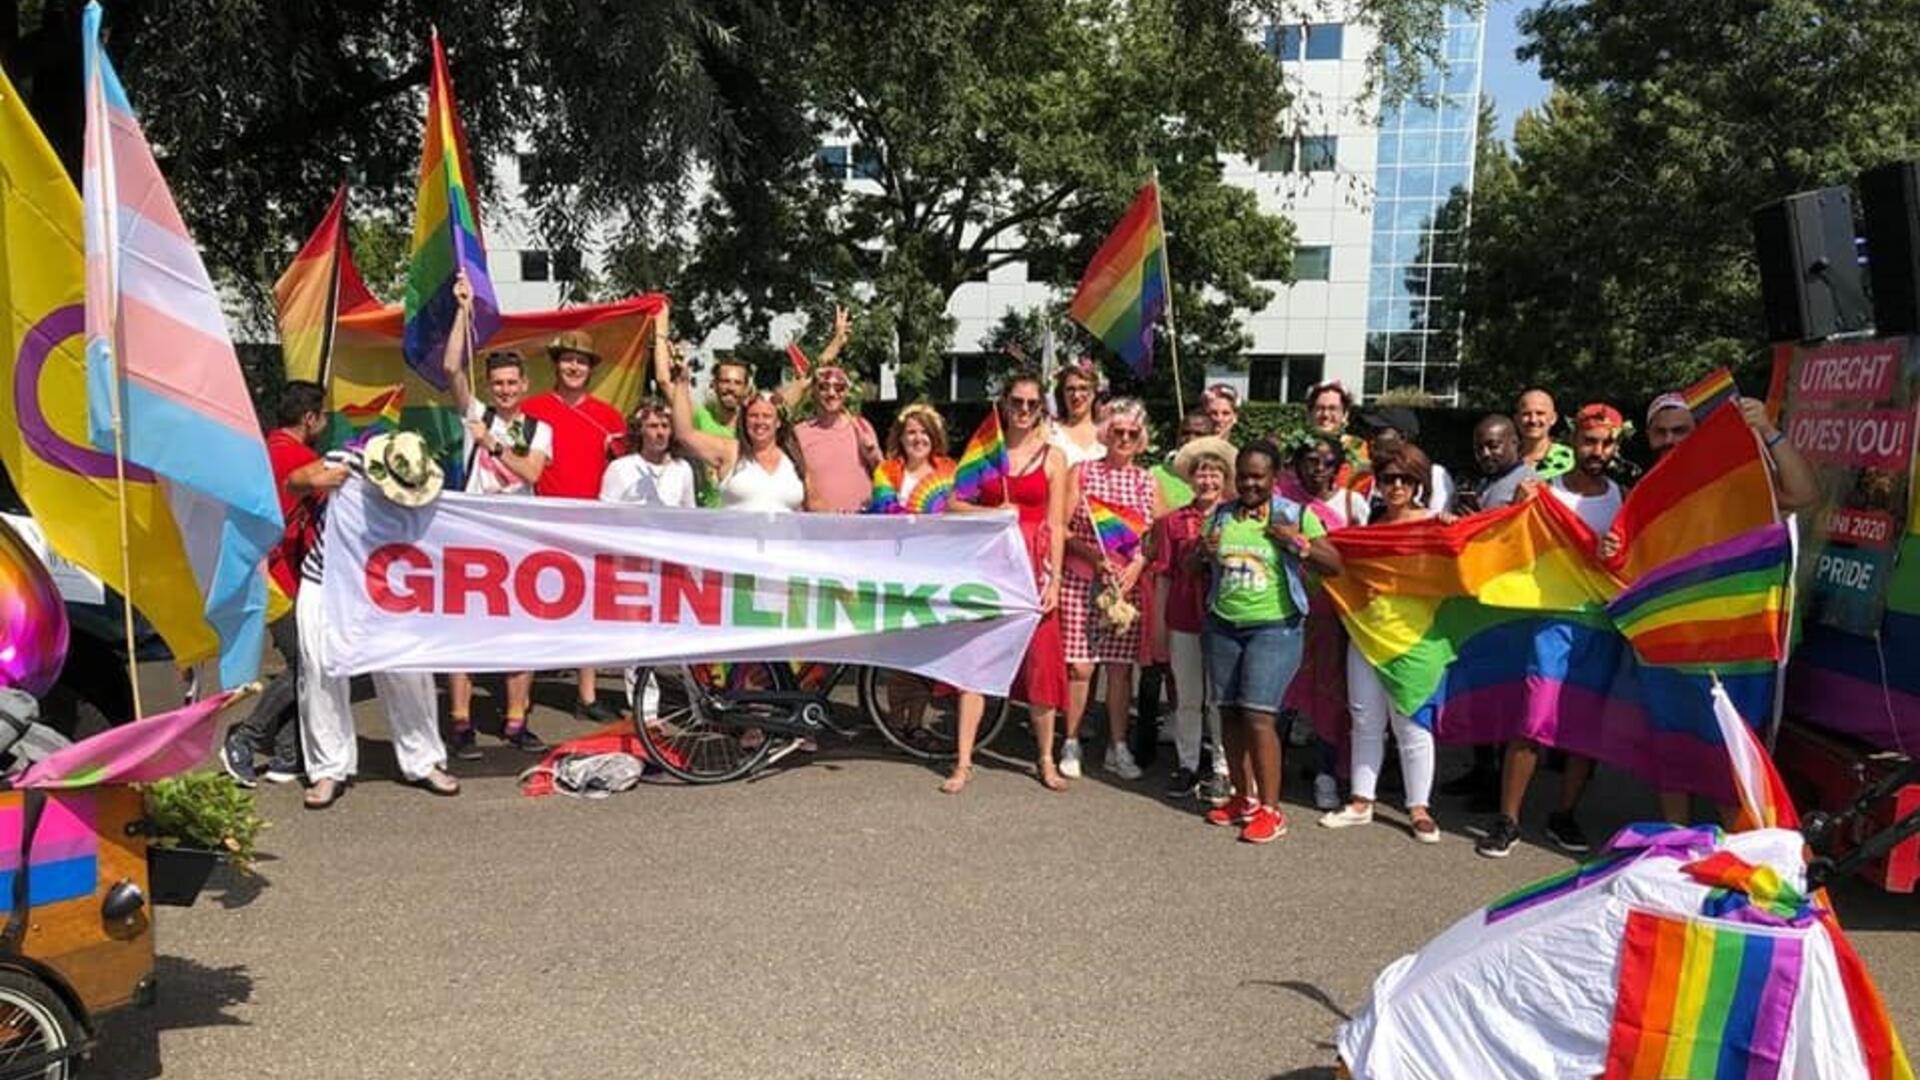 Een groen GroenLinksers bij de vorige Zwolle Pride. Ze zijn in bonte kleuren uitgedost en dragen een spandoek met 'GroenLinks' erop